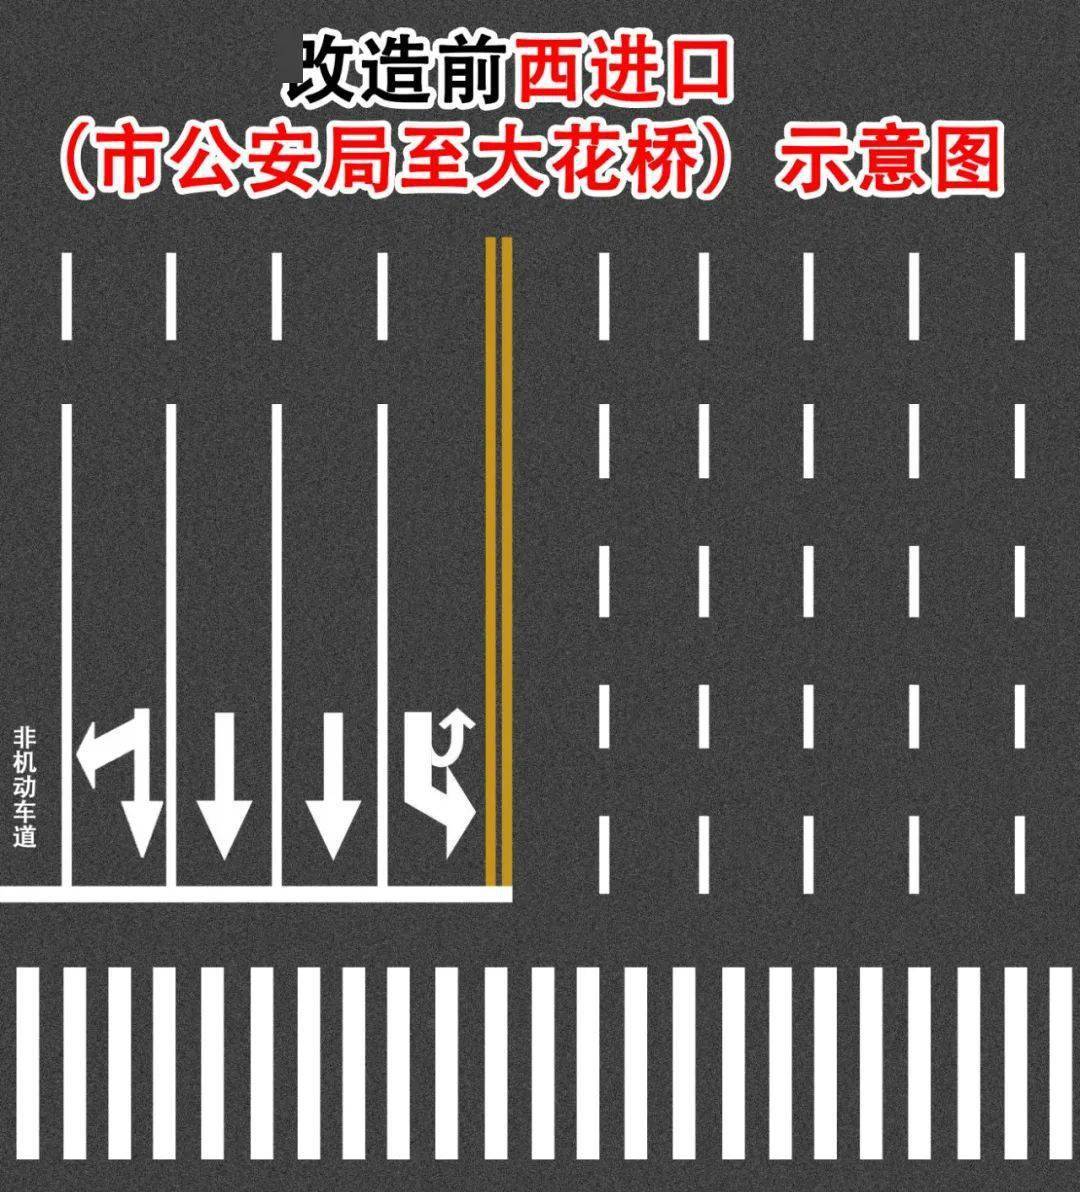 请需要掉头的车辆驾驶人按照车道导向指示选择左转,直行,右转到下游